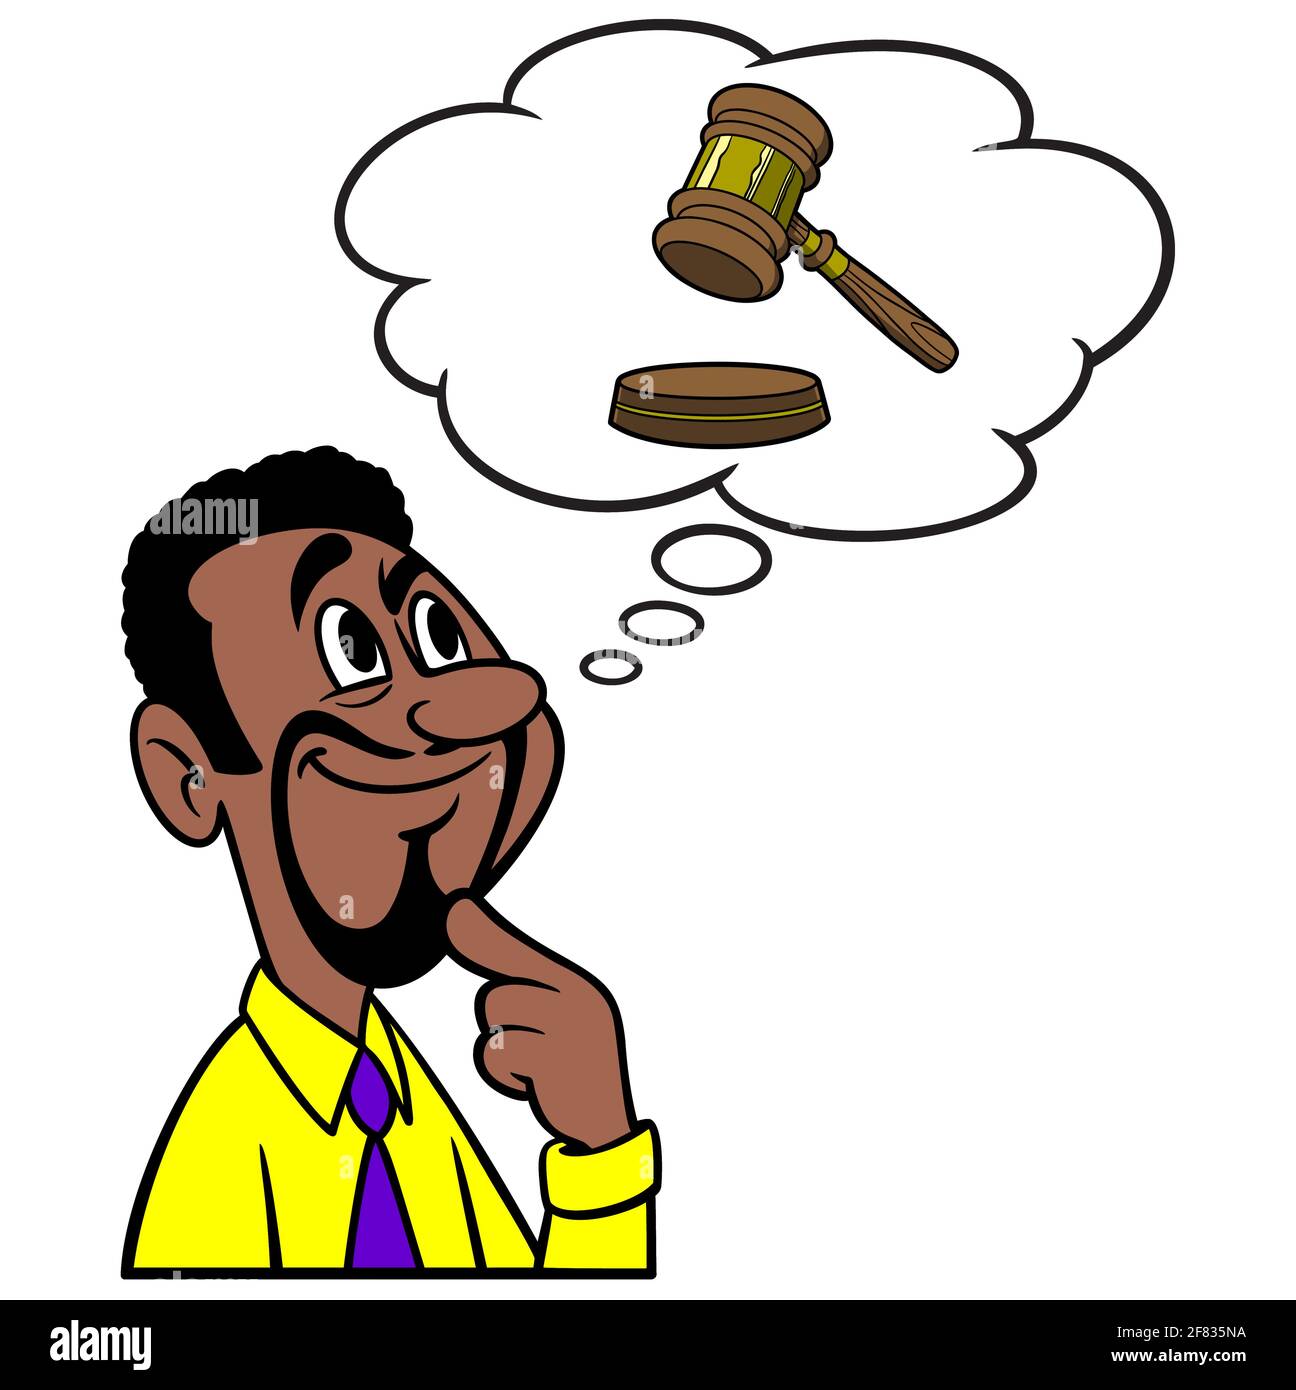 Mann, der an einen Gerichtsfall denkt - EINE Cartoon-Illustration eines Mannes, der an einen bevorstehenden Gerichtsprozess denkt. Stock Vektor